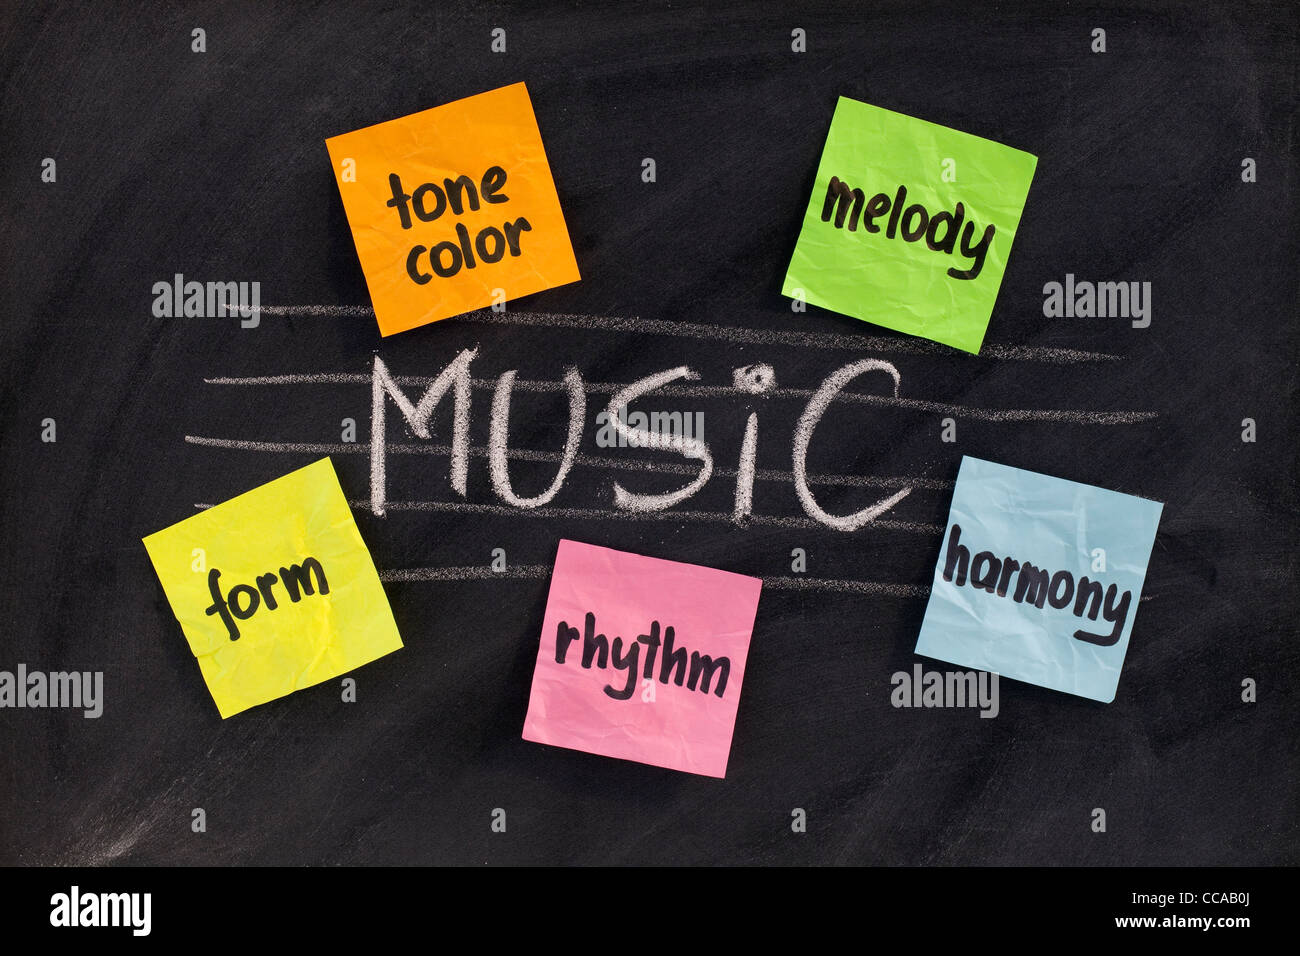 Tradizionale o musicologica Unione-influenzato gli aspetti della musica classica (l'armonia, la melodia, forma, il ritmo e la tonalità di colore) Foto Stock